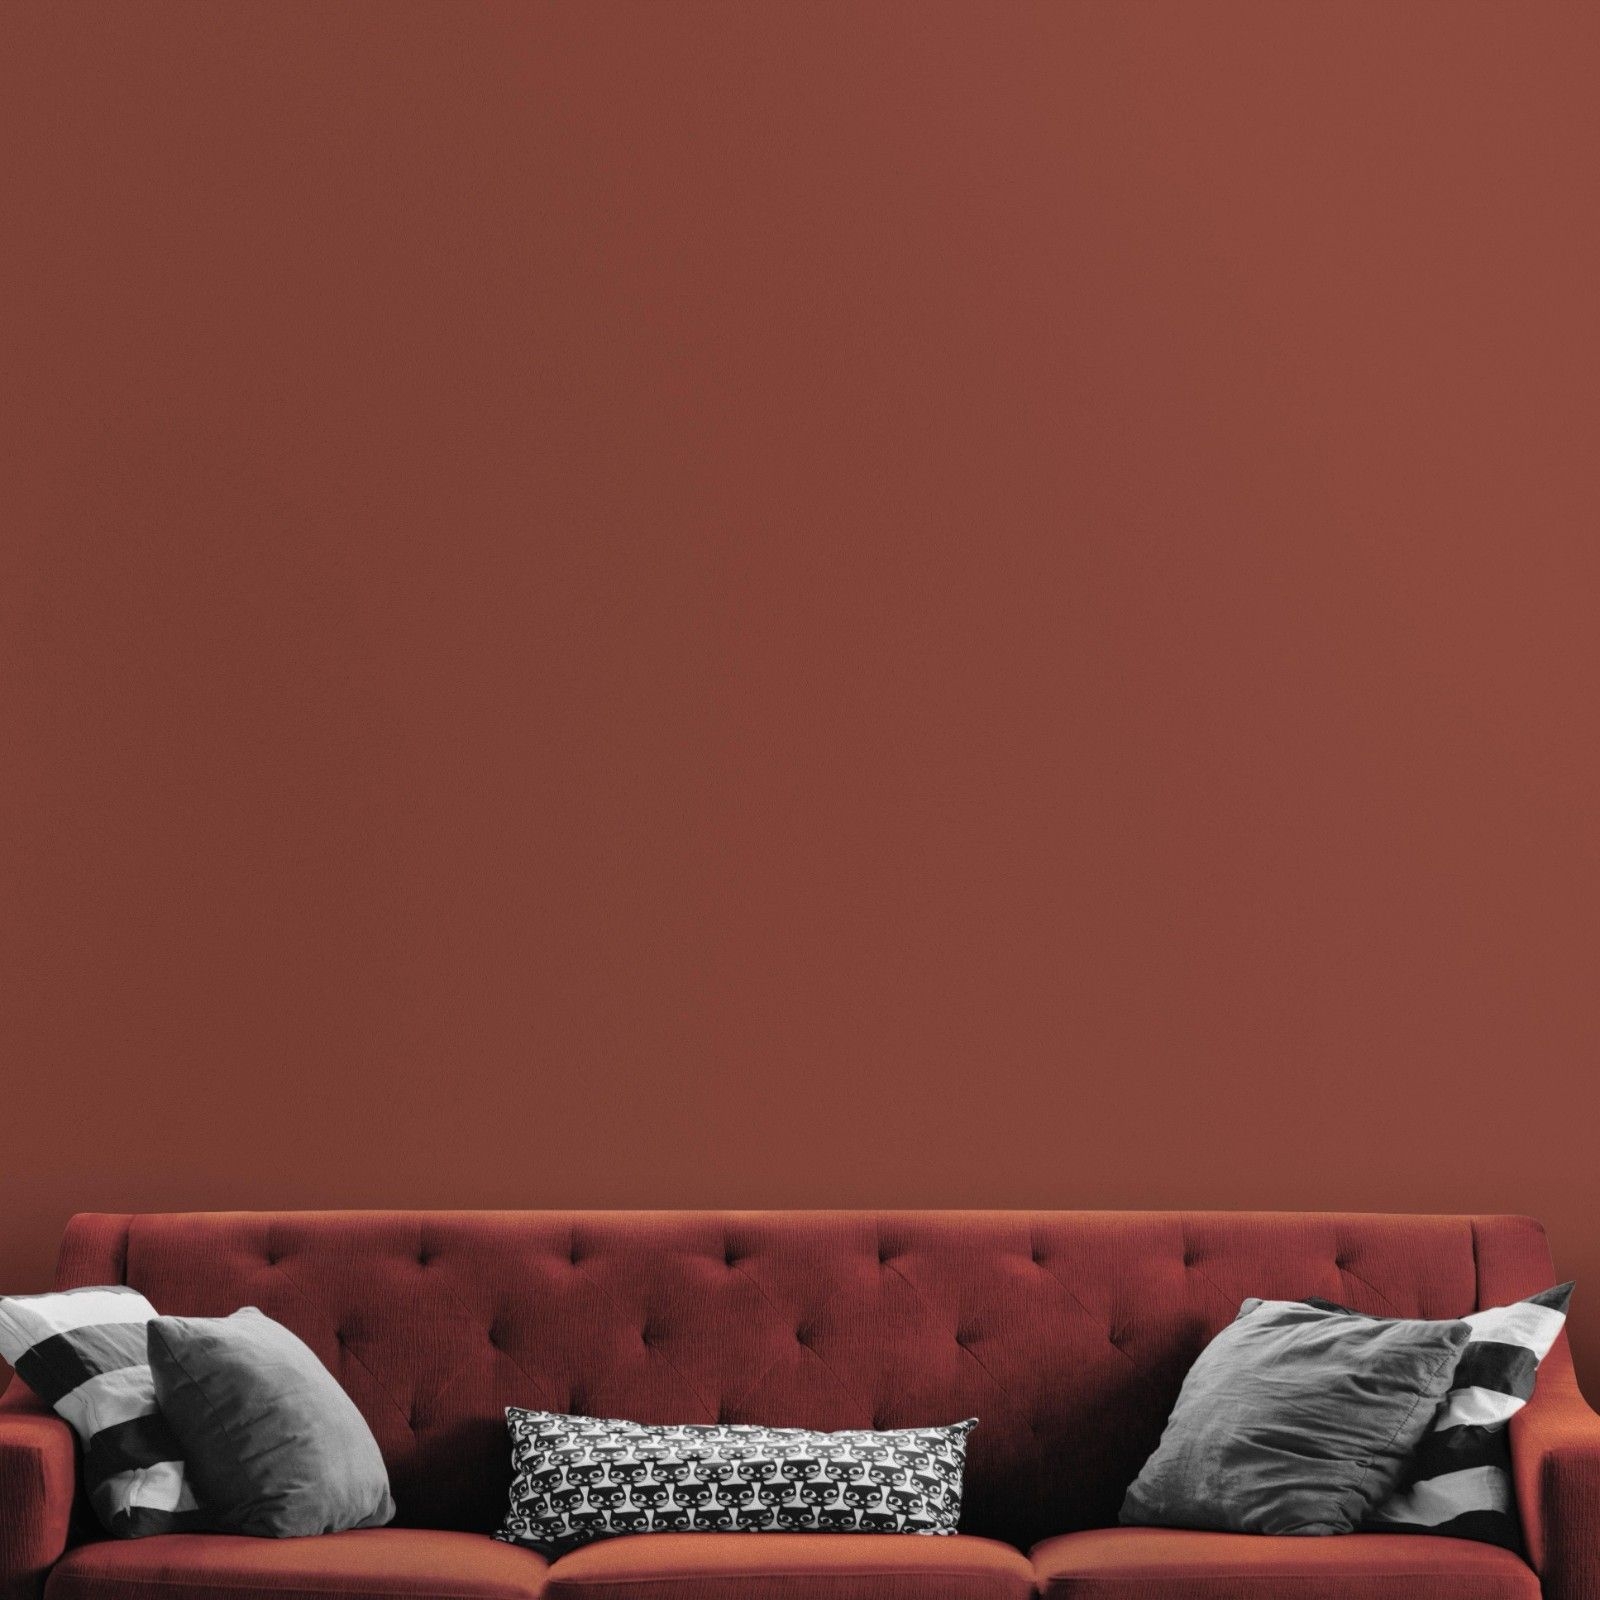 Dunkelrote Wandfarbe Kiss Me Now nachhaltig von Mynt vor rotem Sofa und grauen Pölstern.